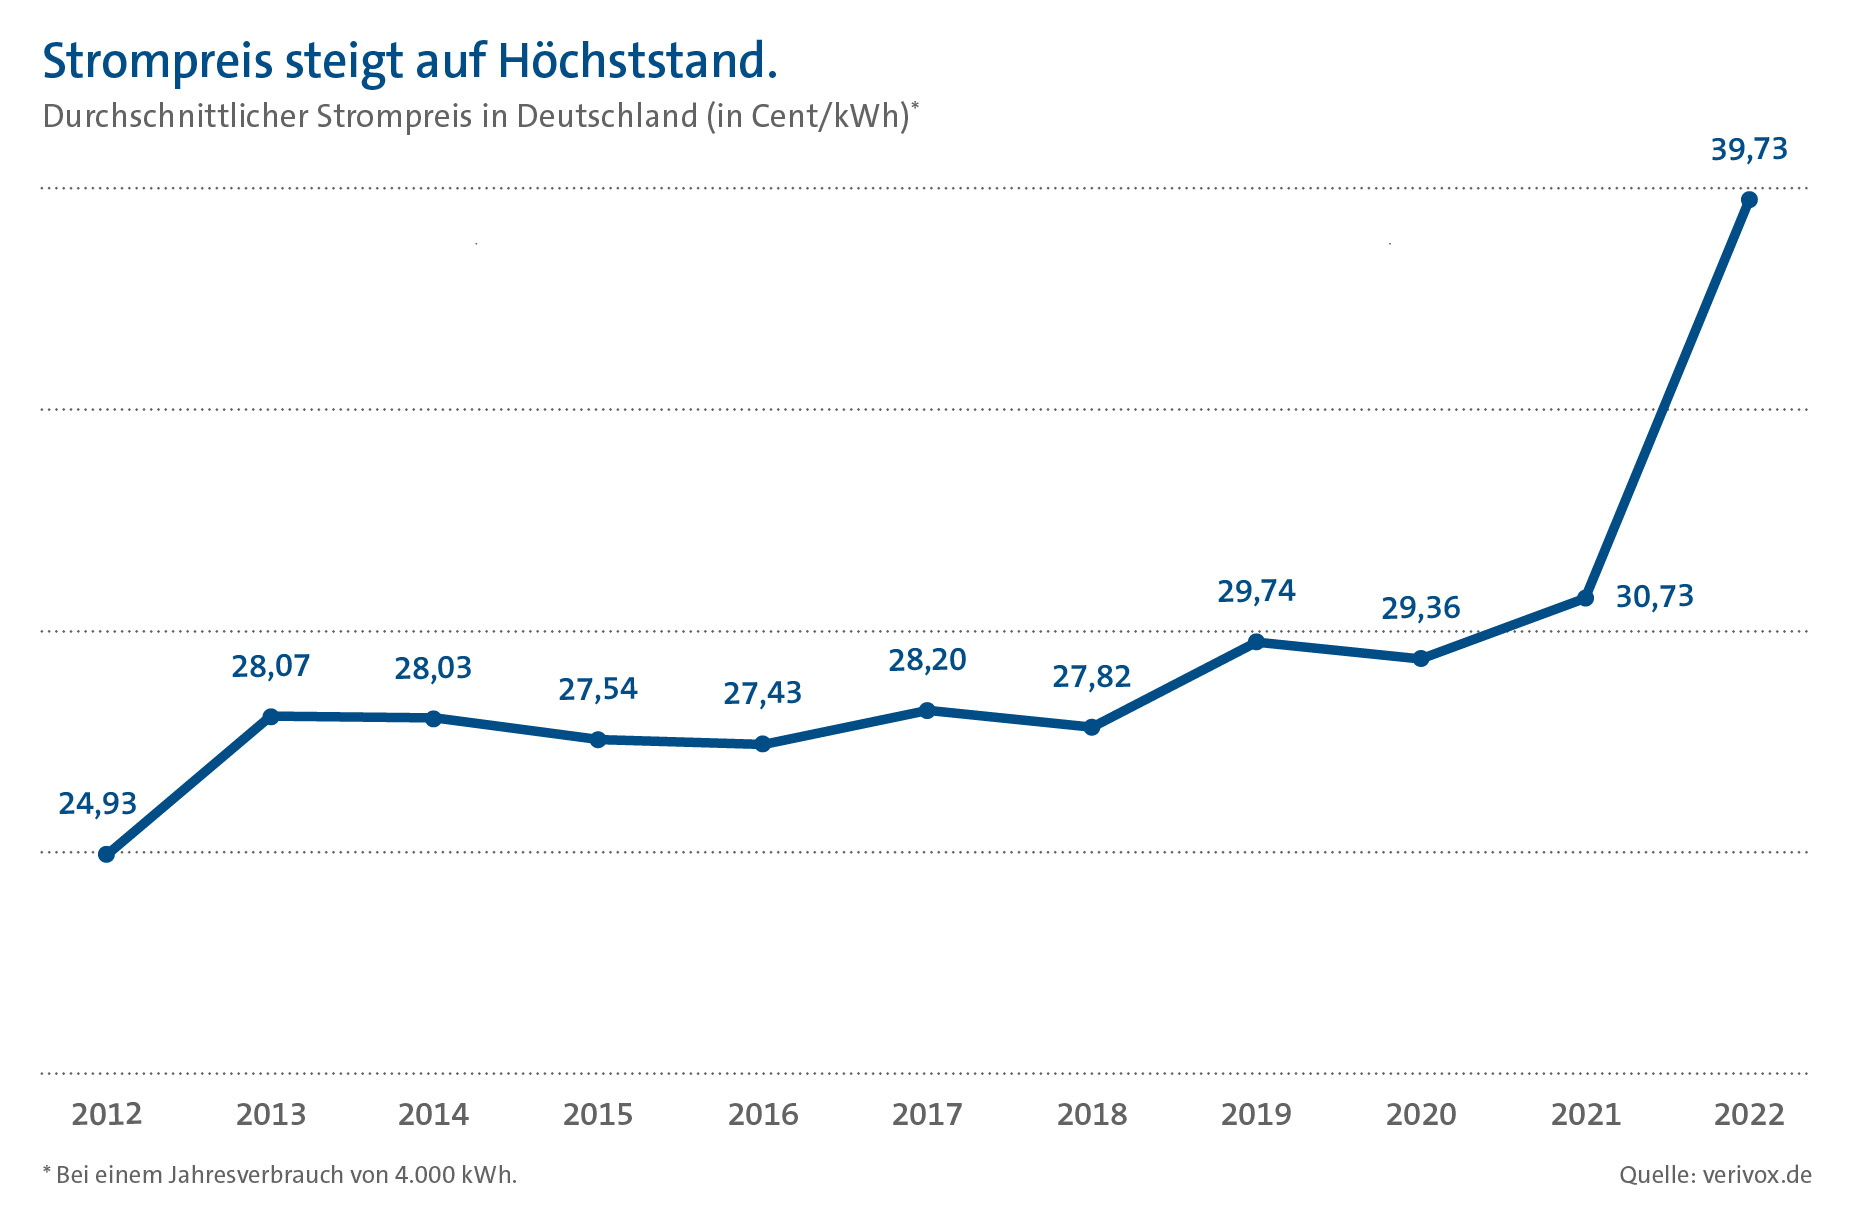 Diagramm zur Strompreisentwicklung in Deutschland von 2012 bis 2022.